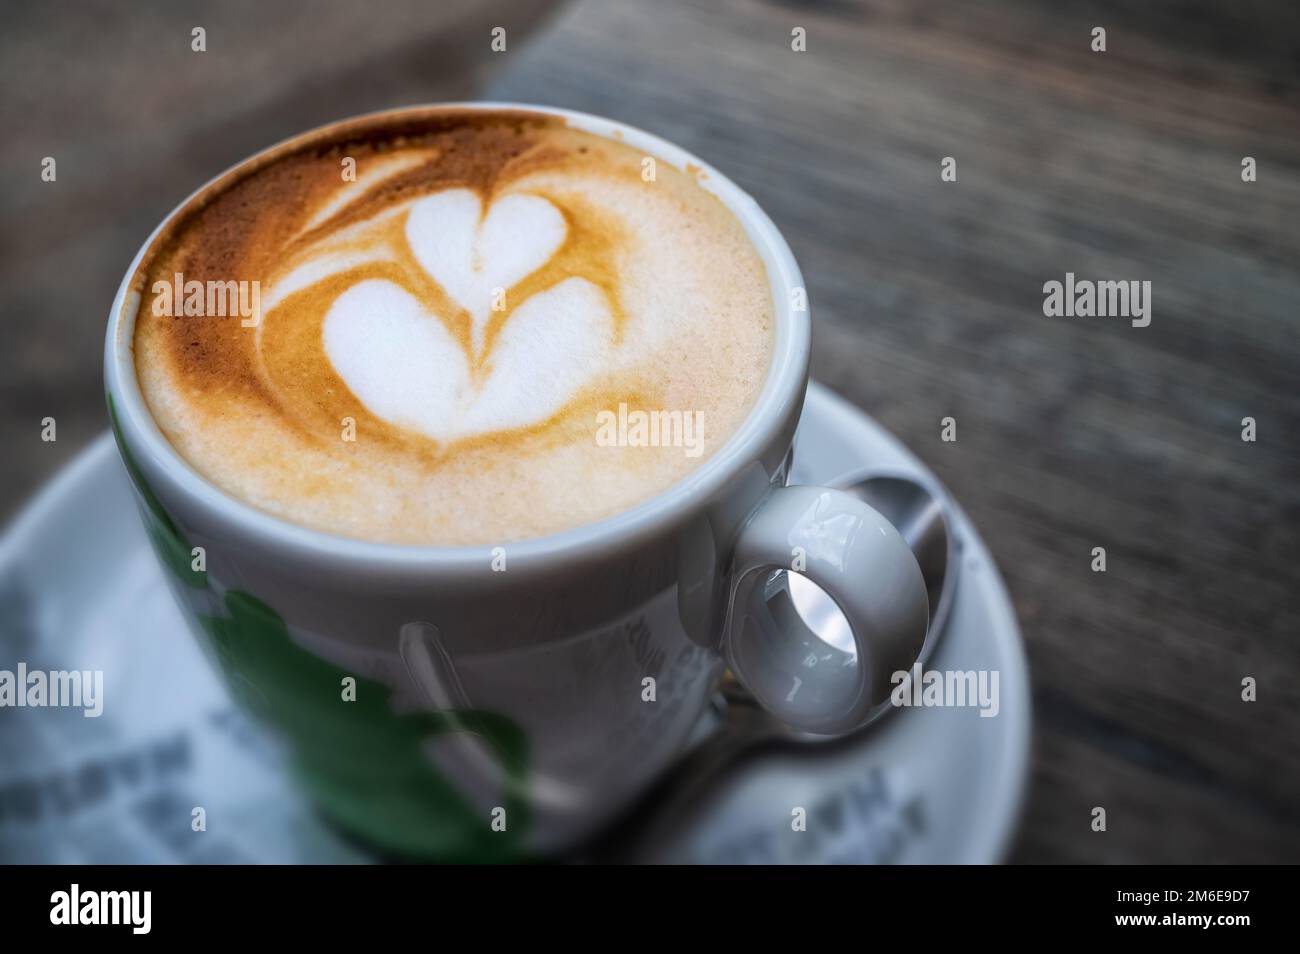 Delicious cappuccino with artfully designed milk foam Stock Photo